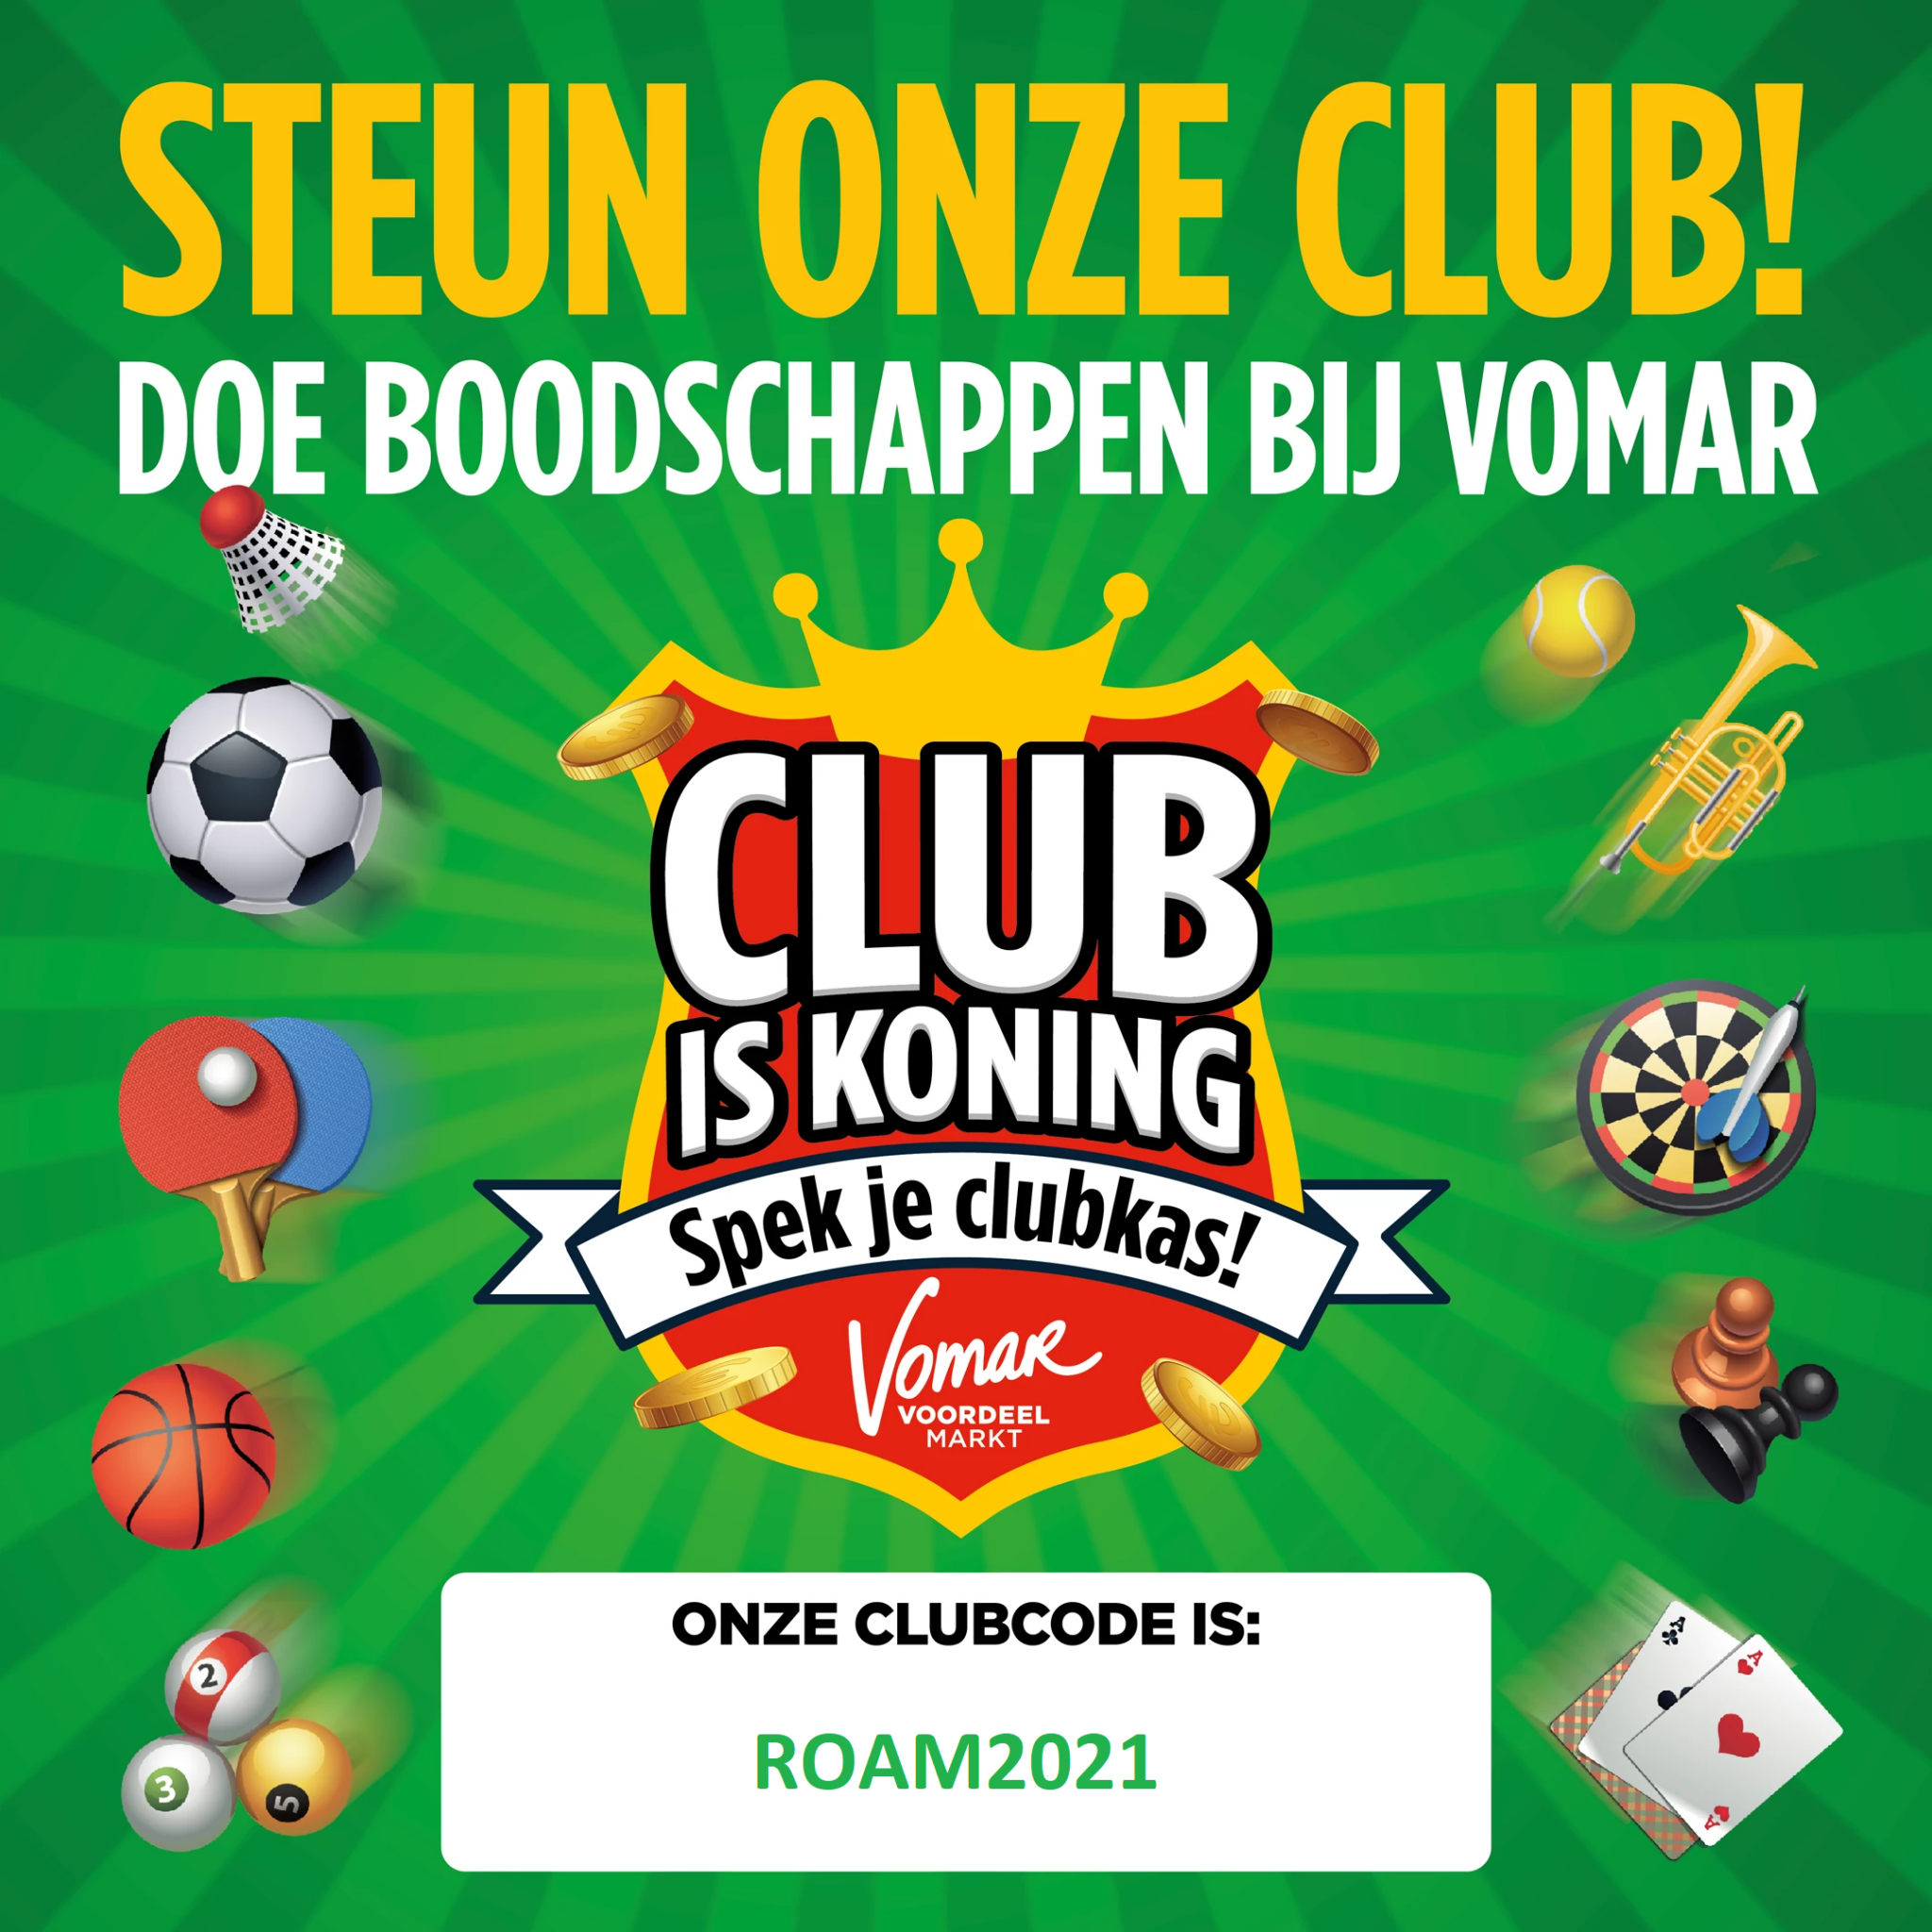 Spek de clubkas met Club is Koning sparen van Vomar en verdubbel ons jaarbedrag!